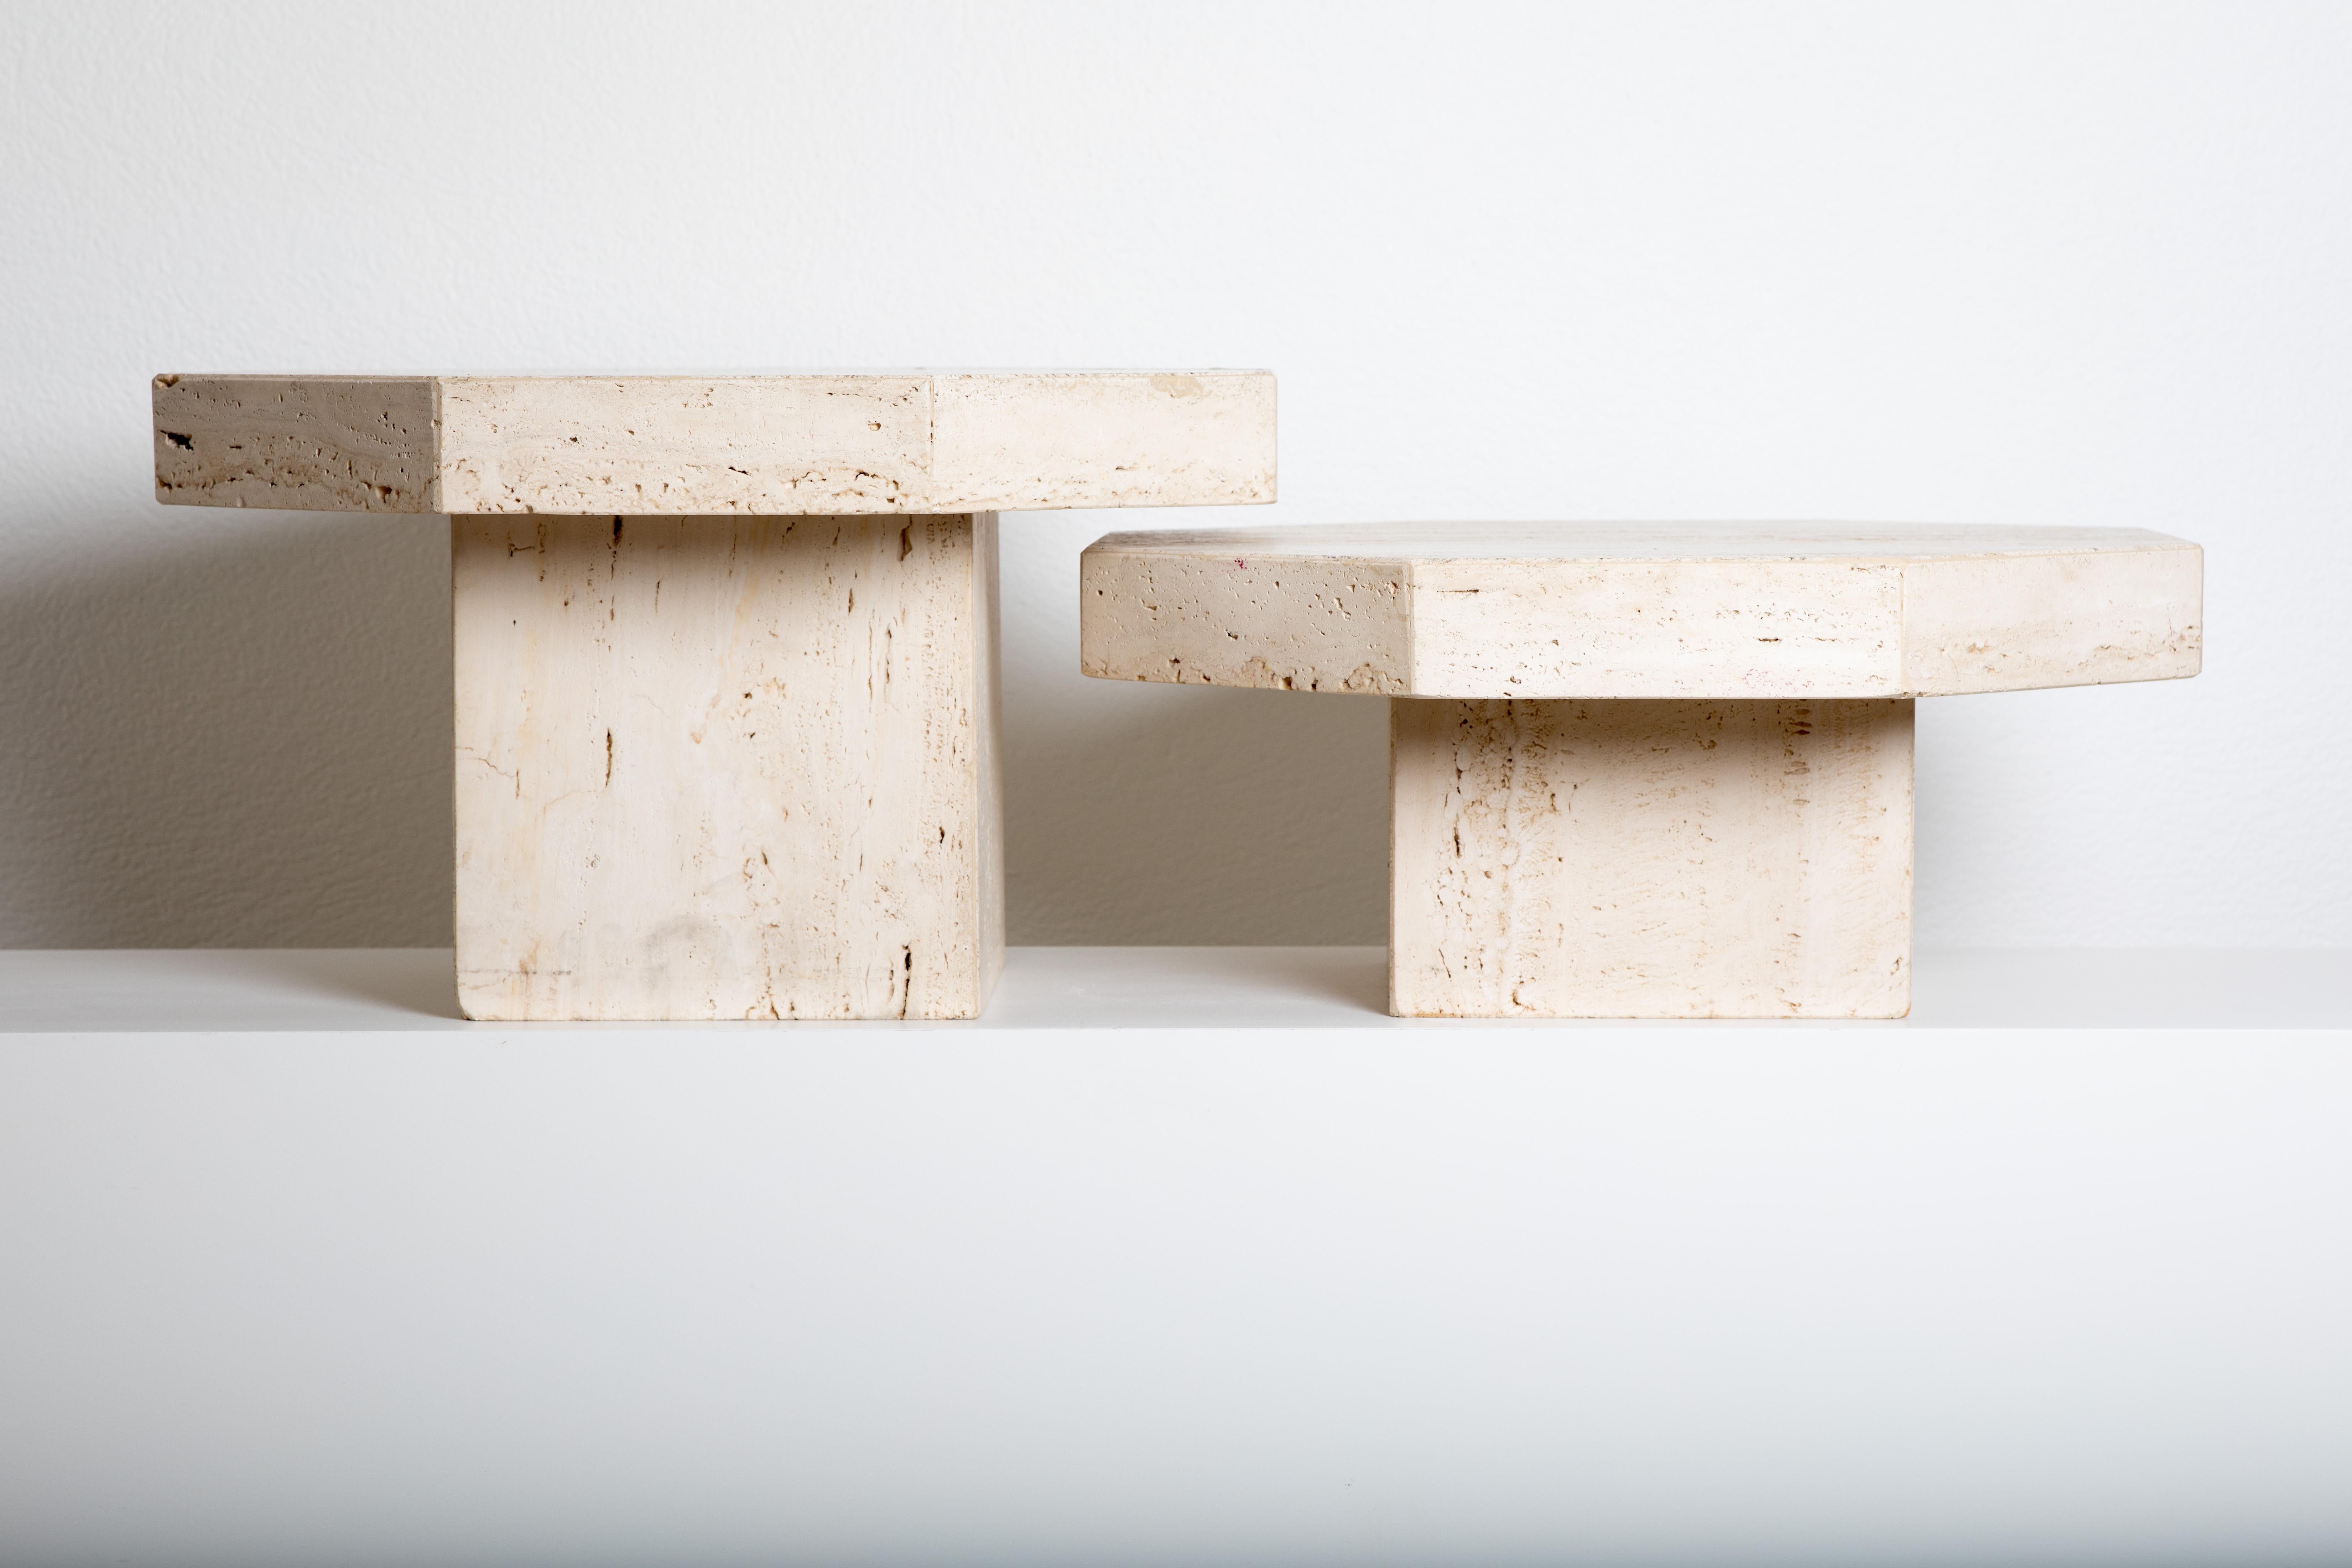 Une paire de tables octogonales en travertin pourrait être un ajout élégant et sophistiqué à votre collection de meubles. Le travertin est un type de pierre calcaire souvent utilisé dans la conception de meubles en raison de ses motifs uniques et